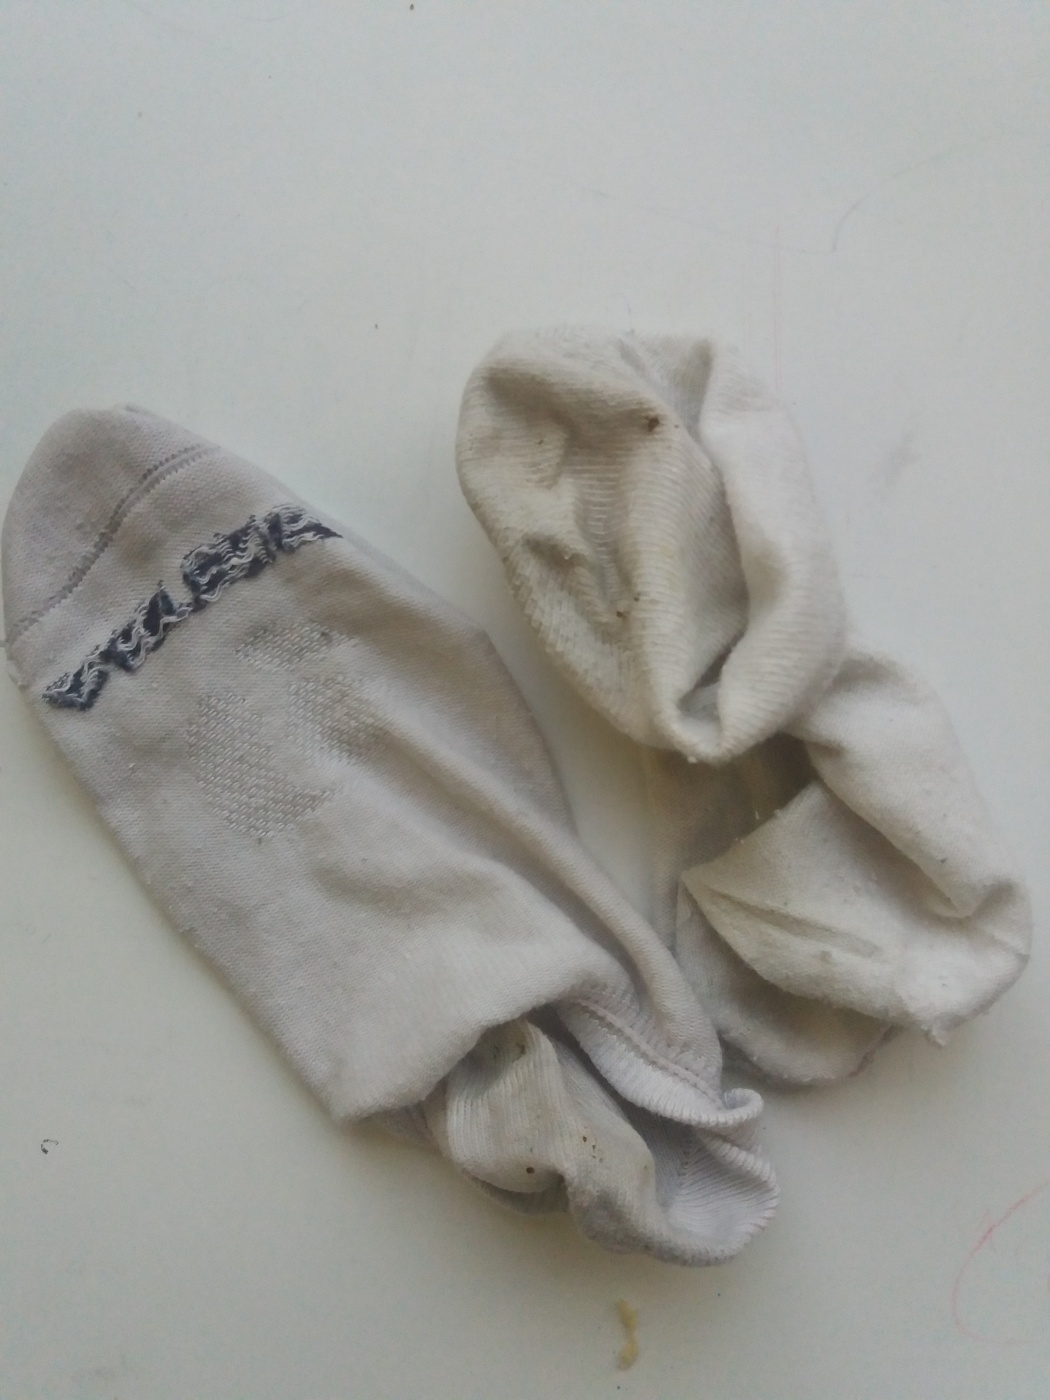 Used socks